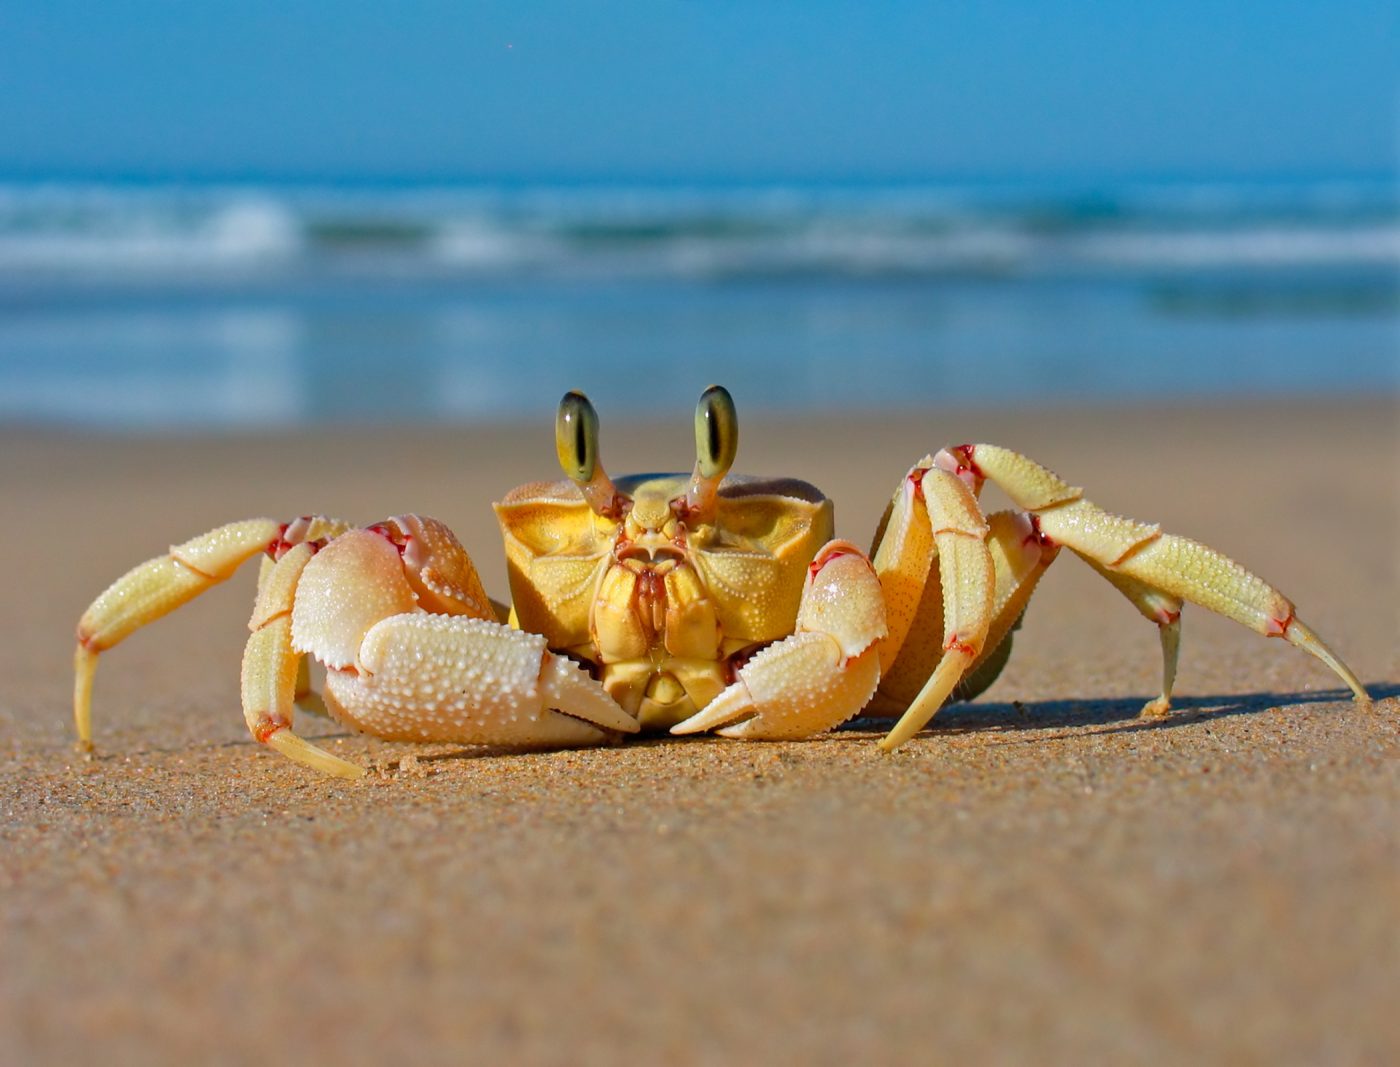 Crab ban